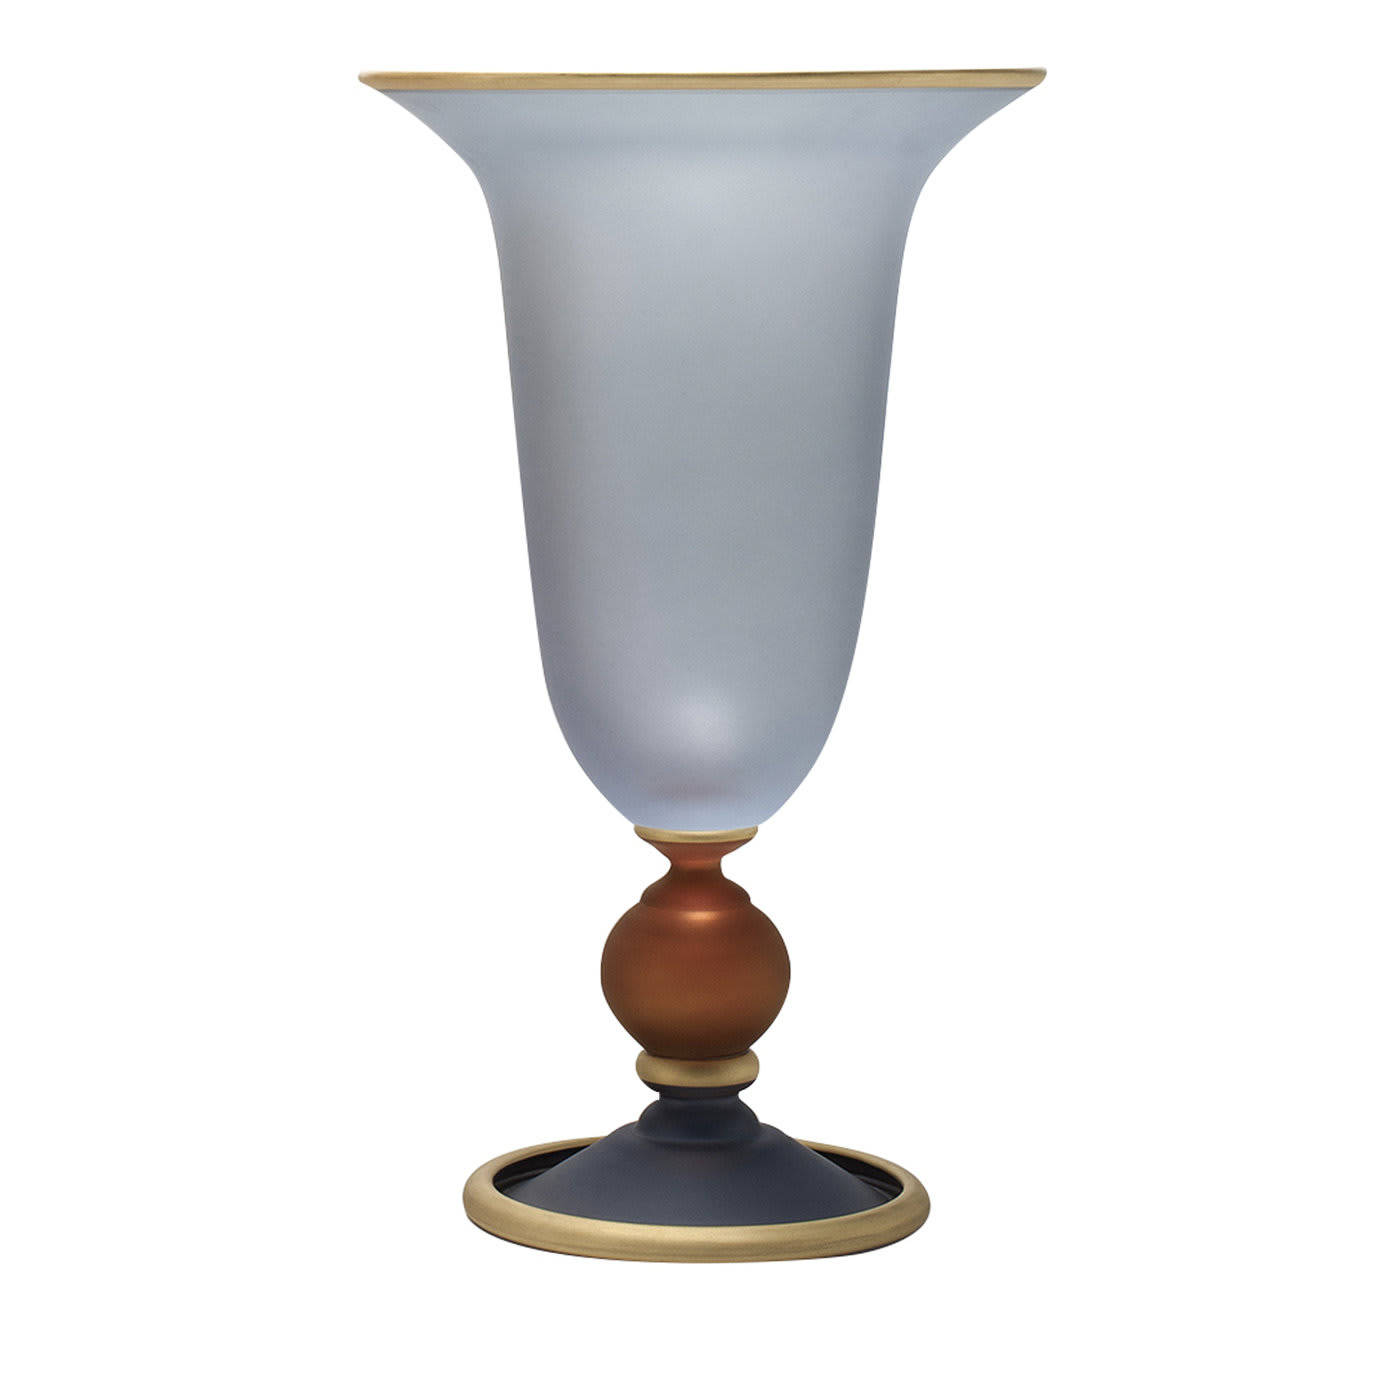 Dolce Vita Vase - Griffe Montenapoleone by Vetrerie di Empoli